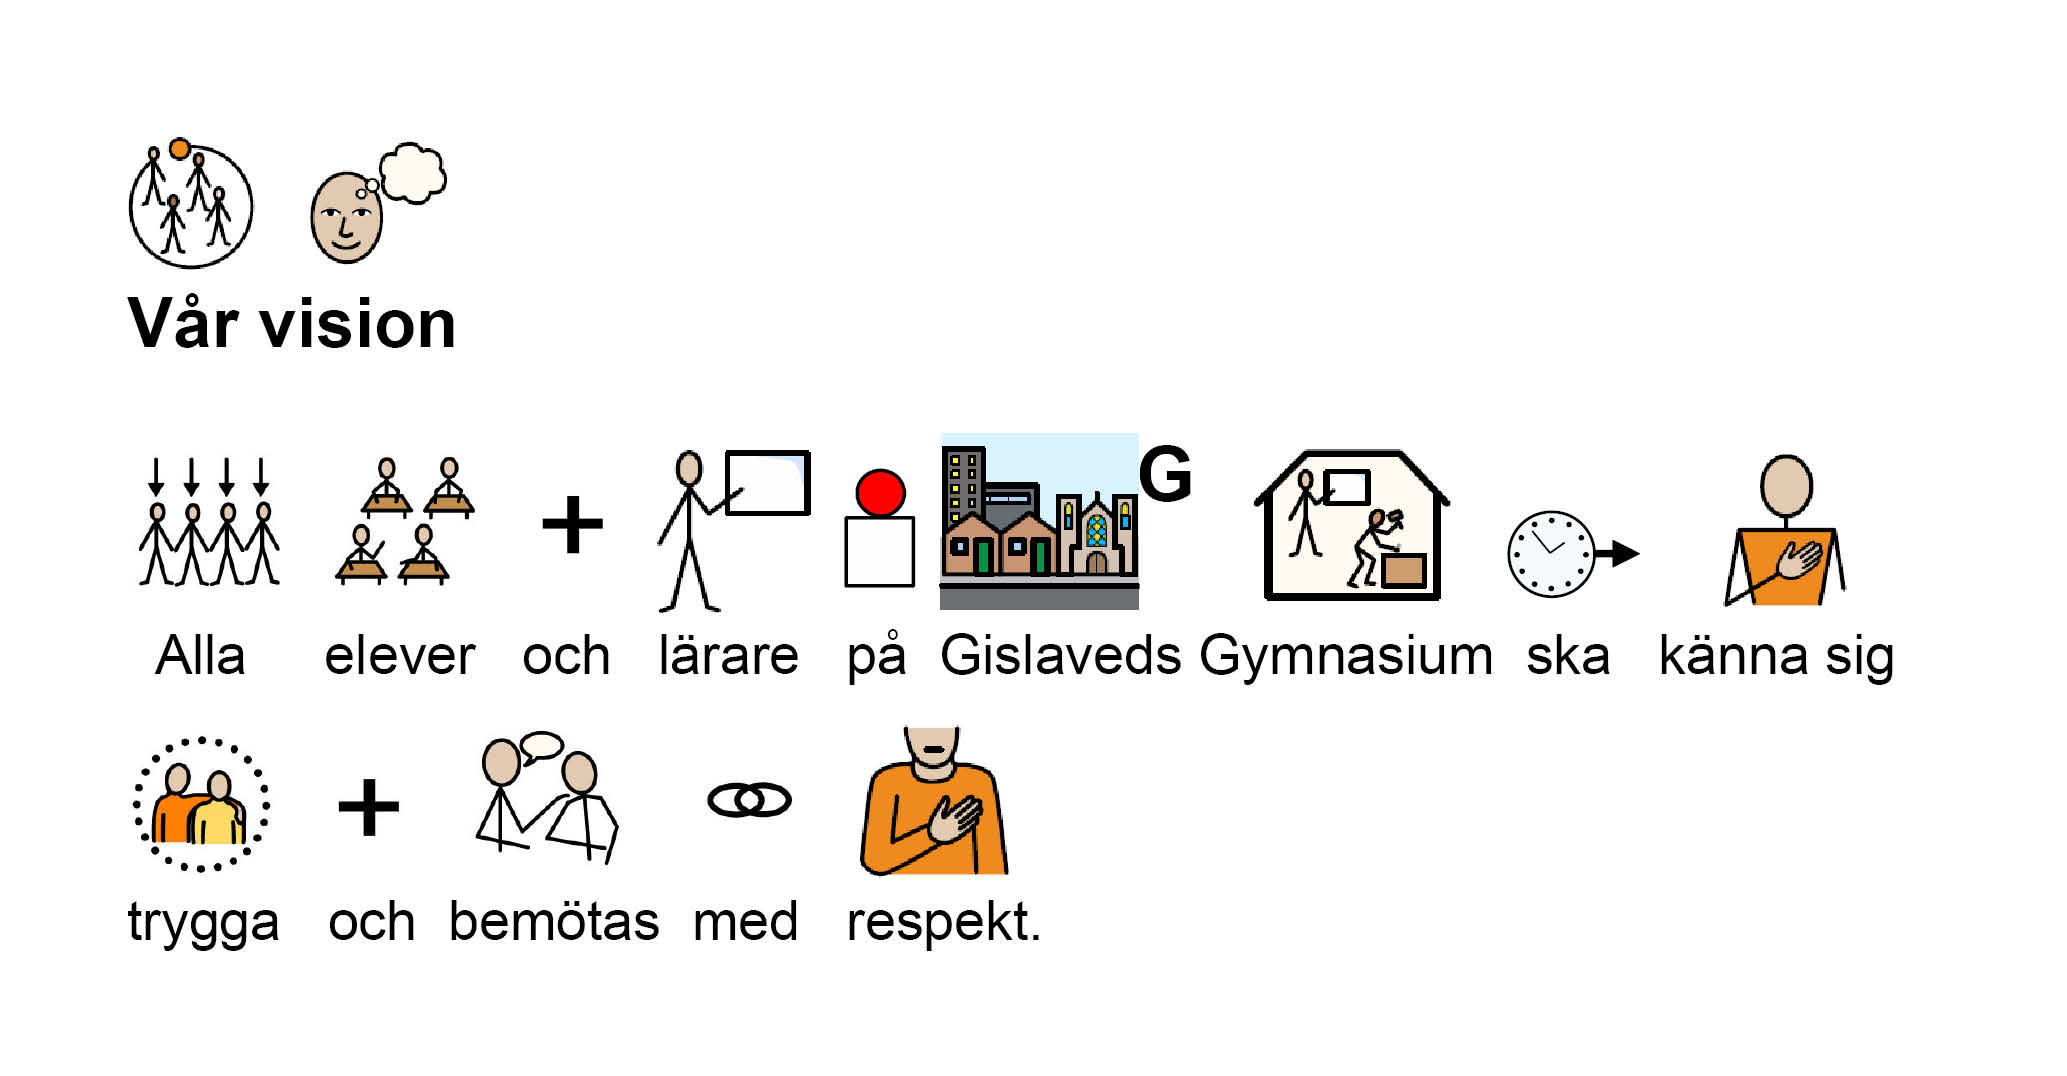 Vår vision. Alla elever och lärare på Gislaveds Gymnasium ska känna sig trygga och bemötas med respekt.